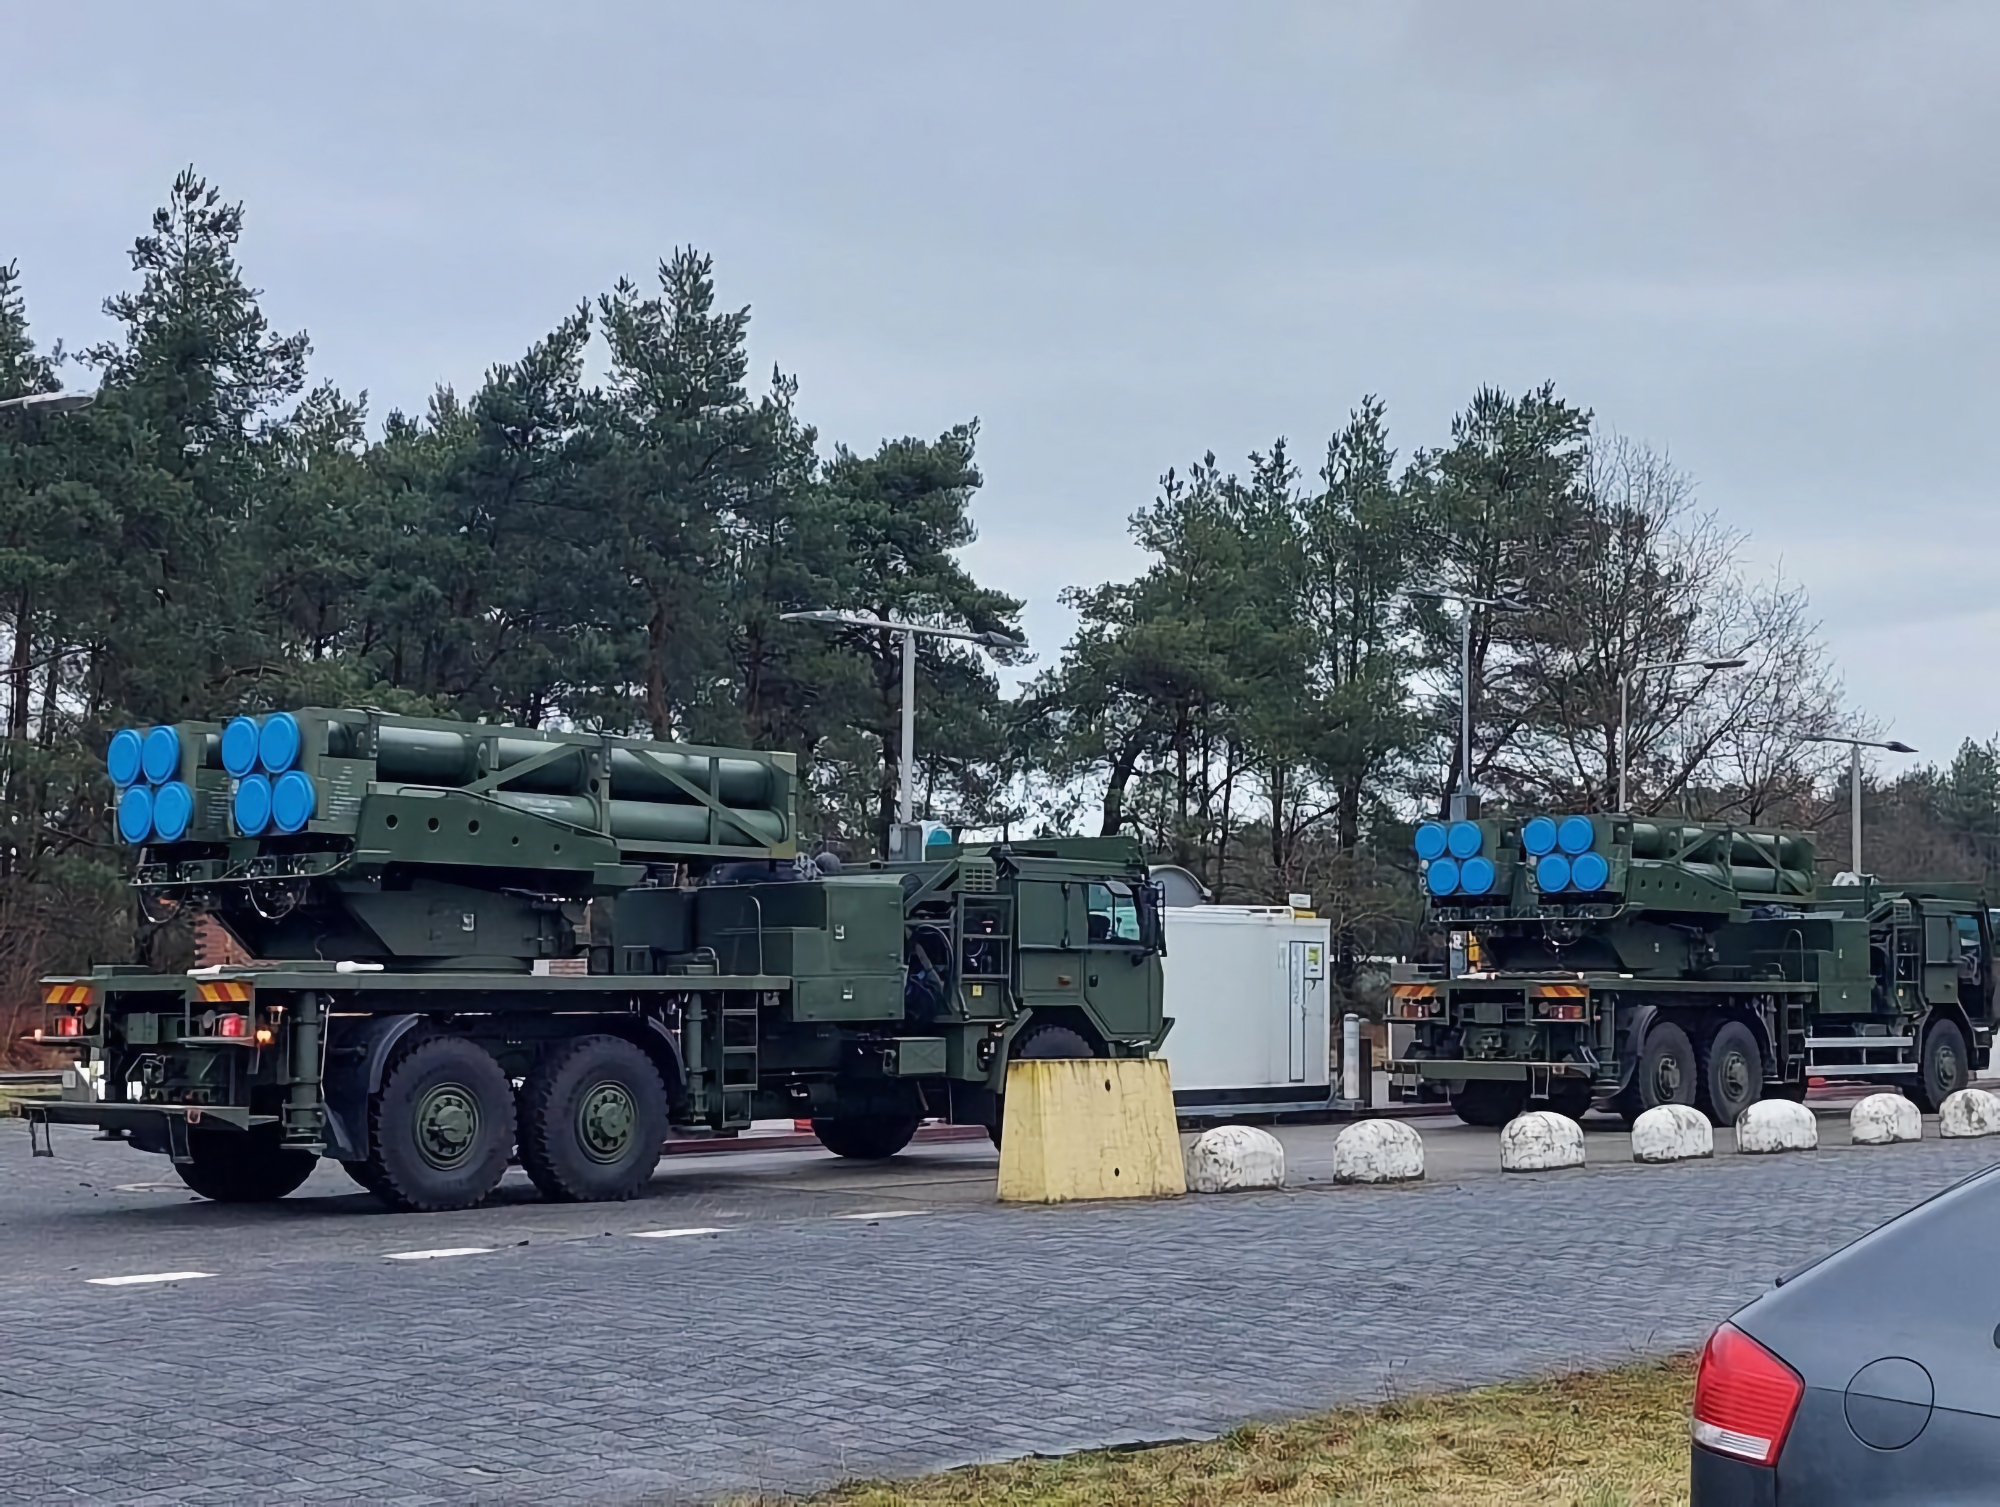 Armia holenderska otrzymała pierwszą partię izraelskich wyrzutni rakiet PULS.